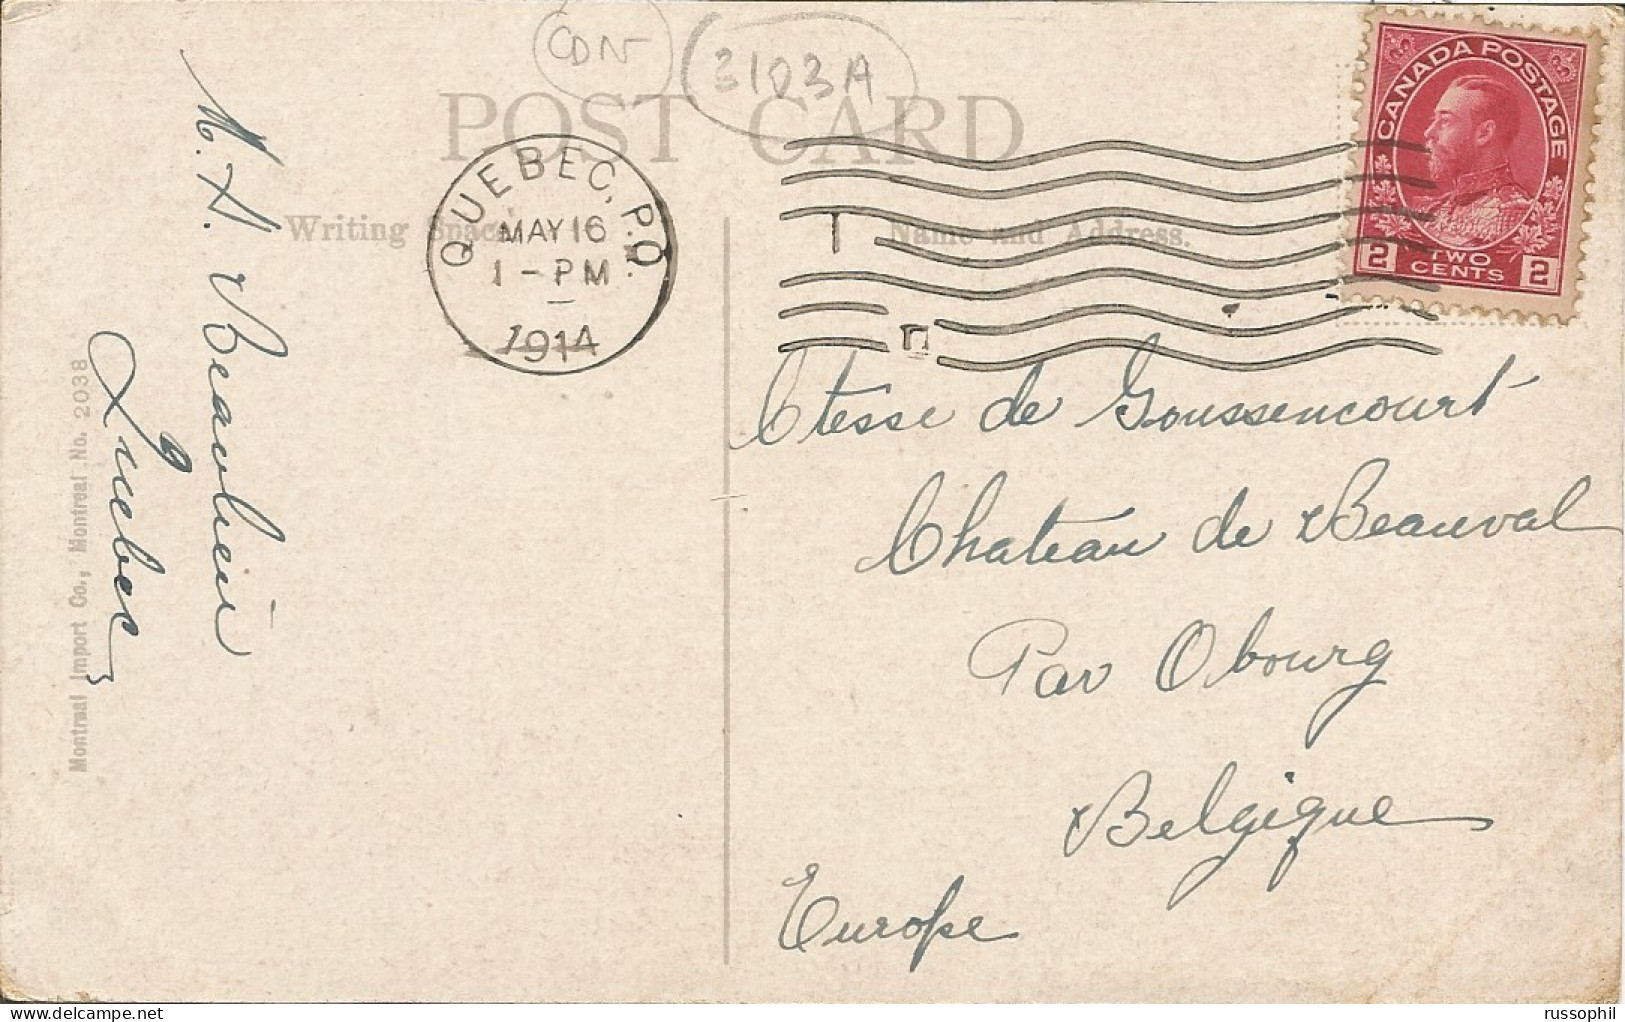 CANADA - QUEBEC - STE ANNE DE BEAUPRE - CEMETERY - PUB. MONTREAL IMPORT CO. - 1914 - Ste. Anne De Beaupré